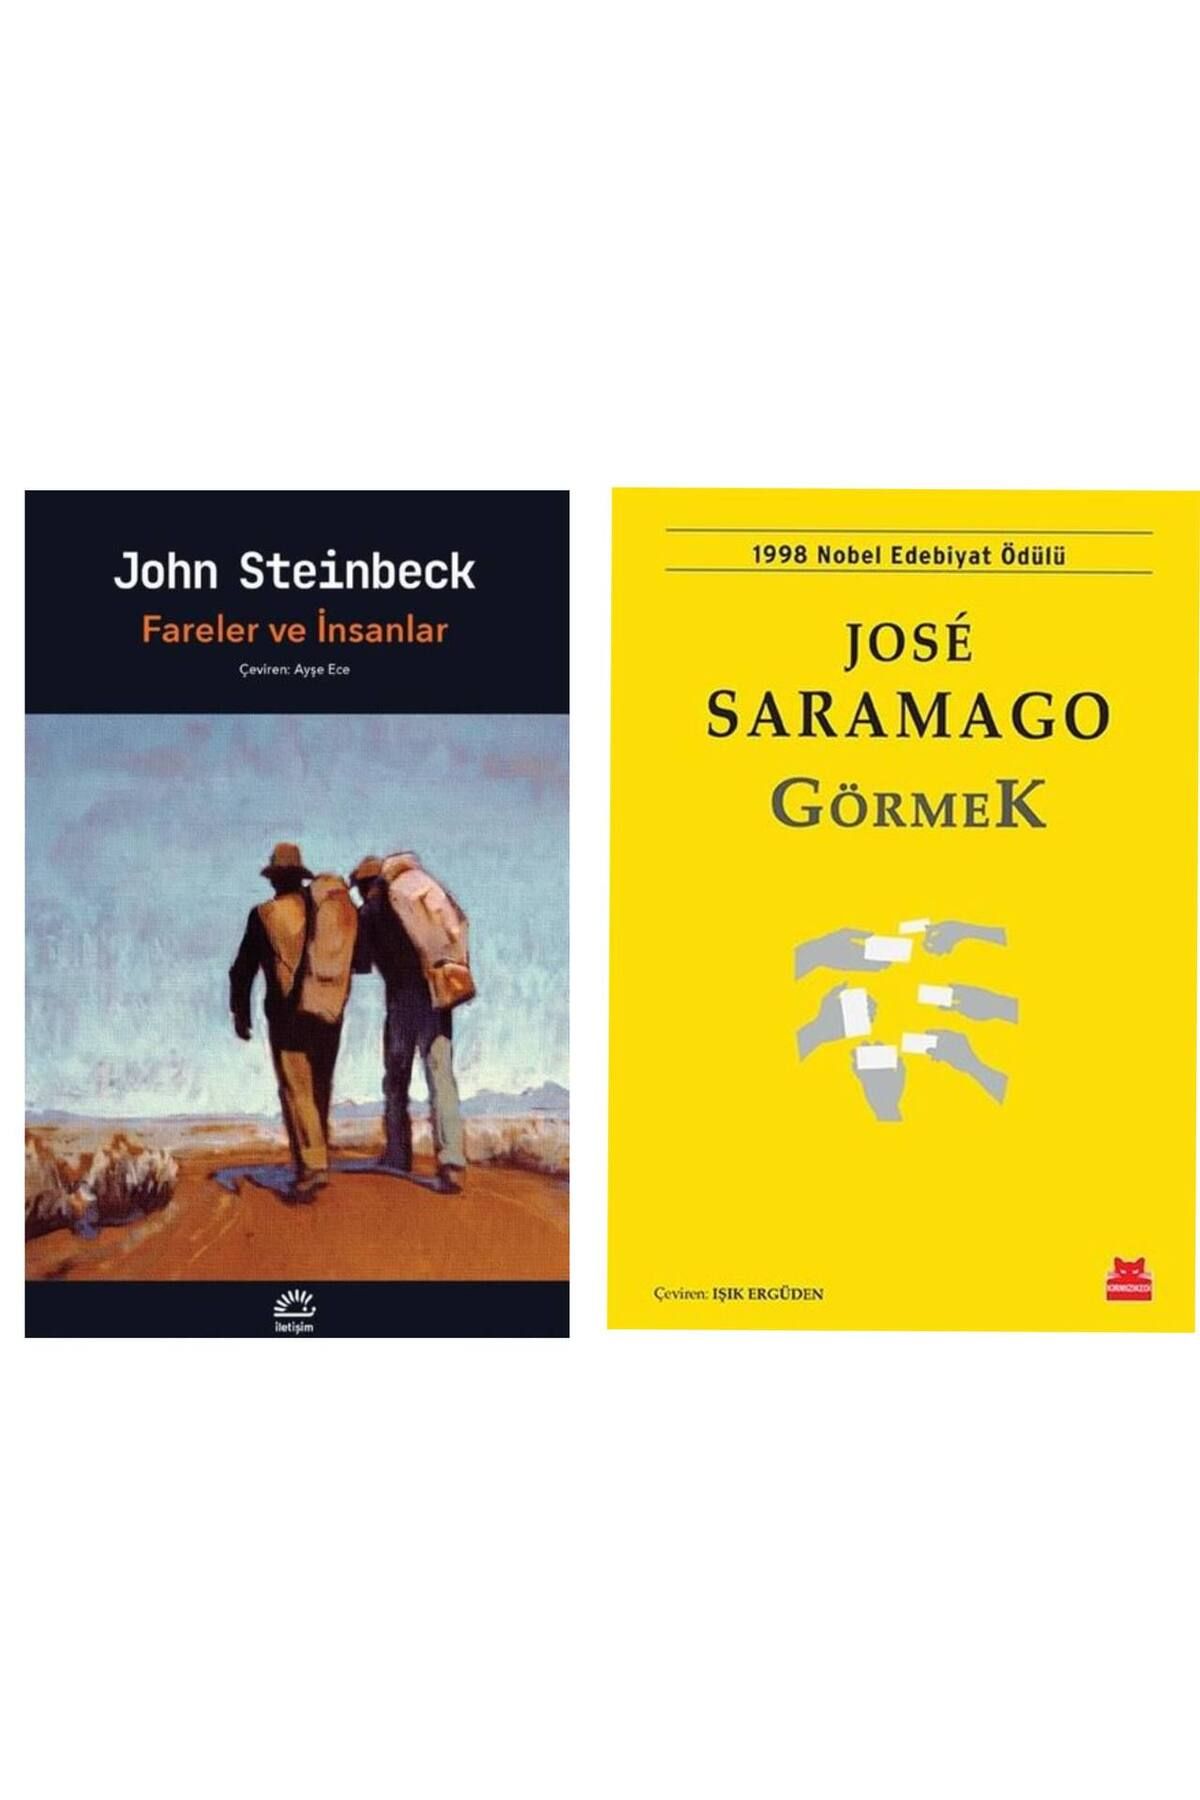 Genel Markalar Fareler ve İnsanlar - John Steinbeck - Görmek - Jose Saramago